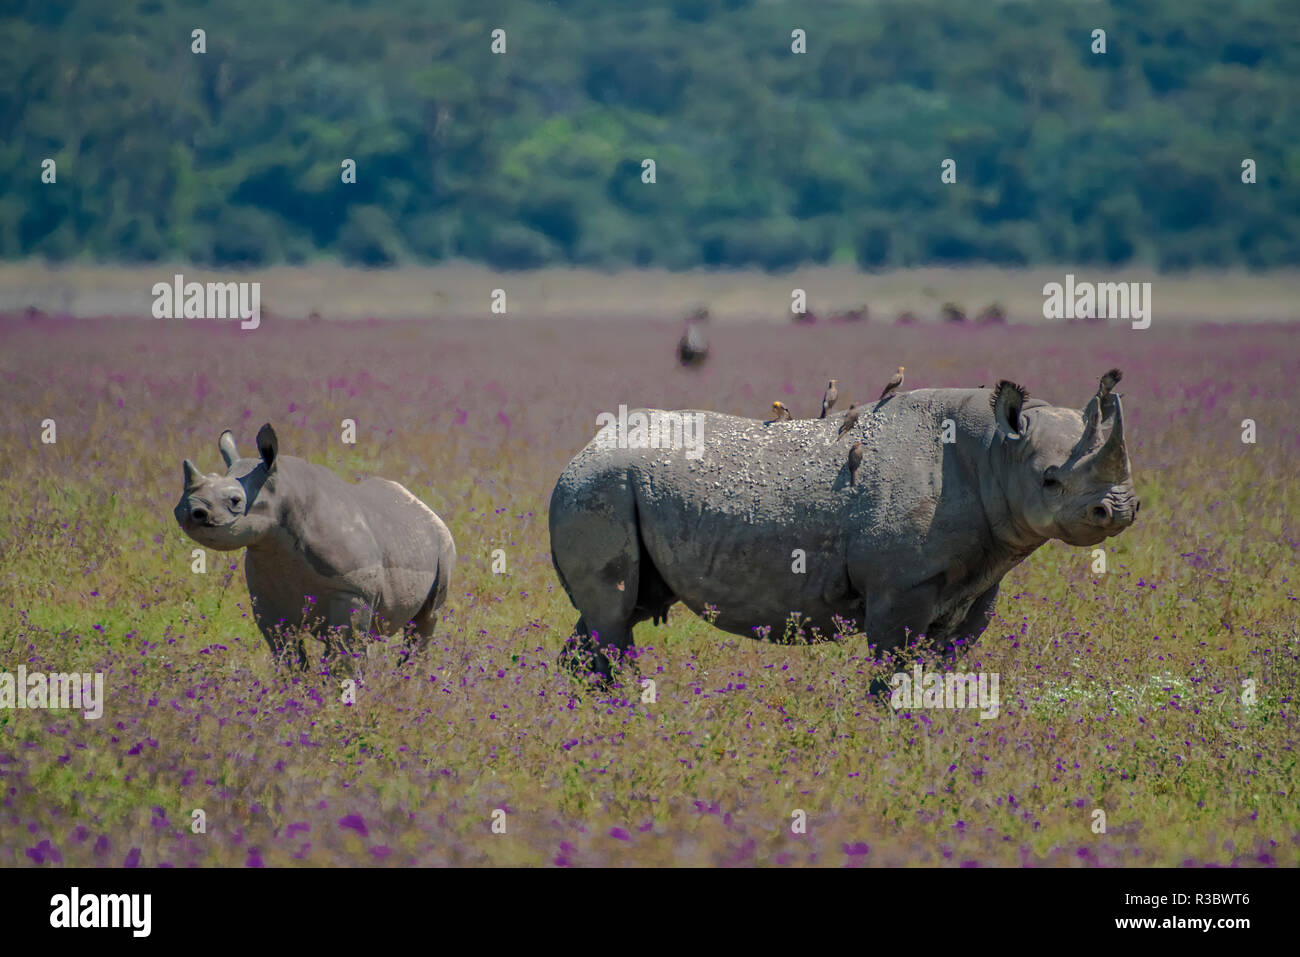 L'Afrique, Tanzanie. Mère Rhino et juvéniles. En tant que crédit : Jones & Shimlock / Jaynes Gallery / DanitaDelimont.com Banque D'Images